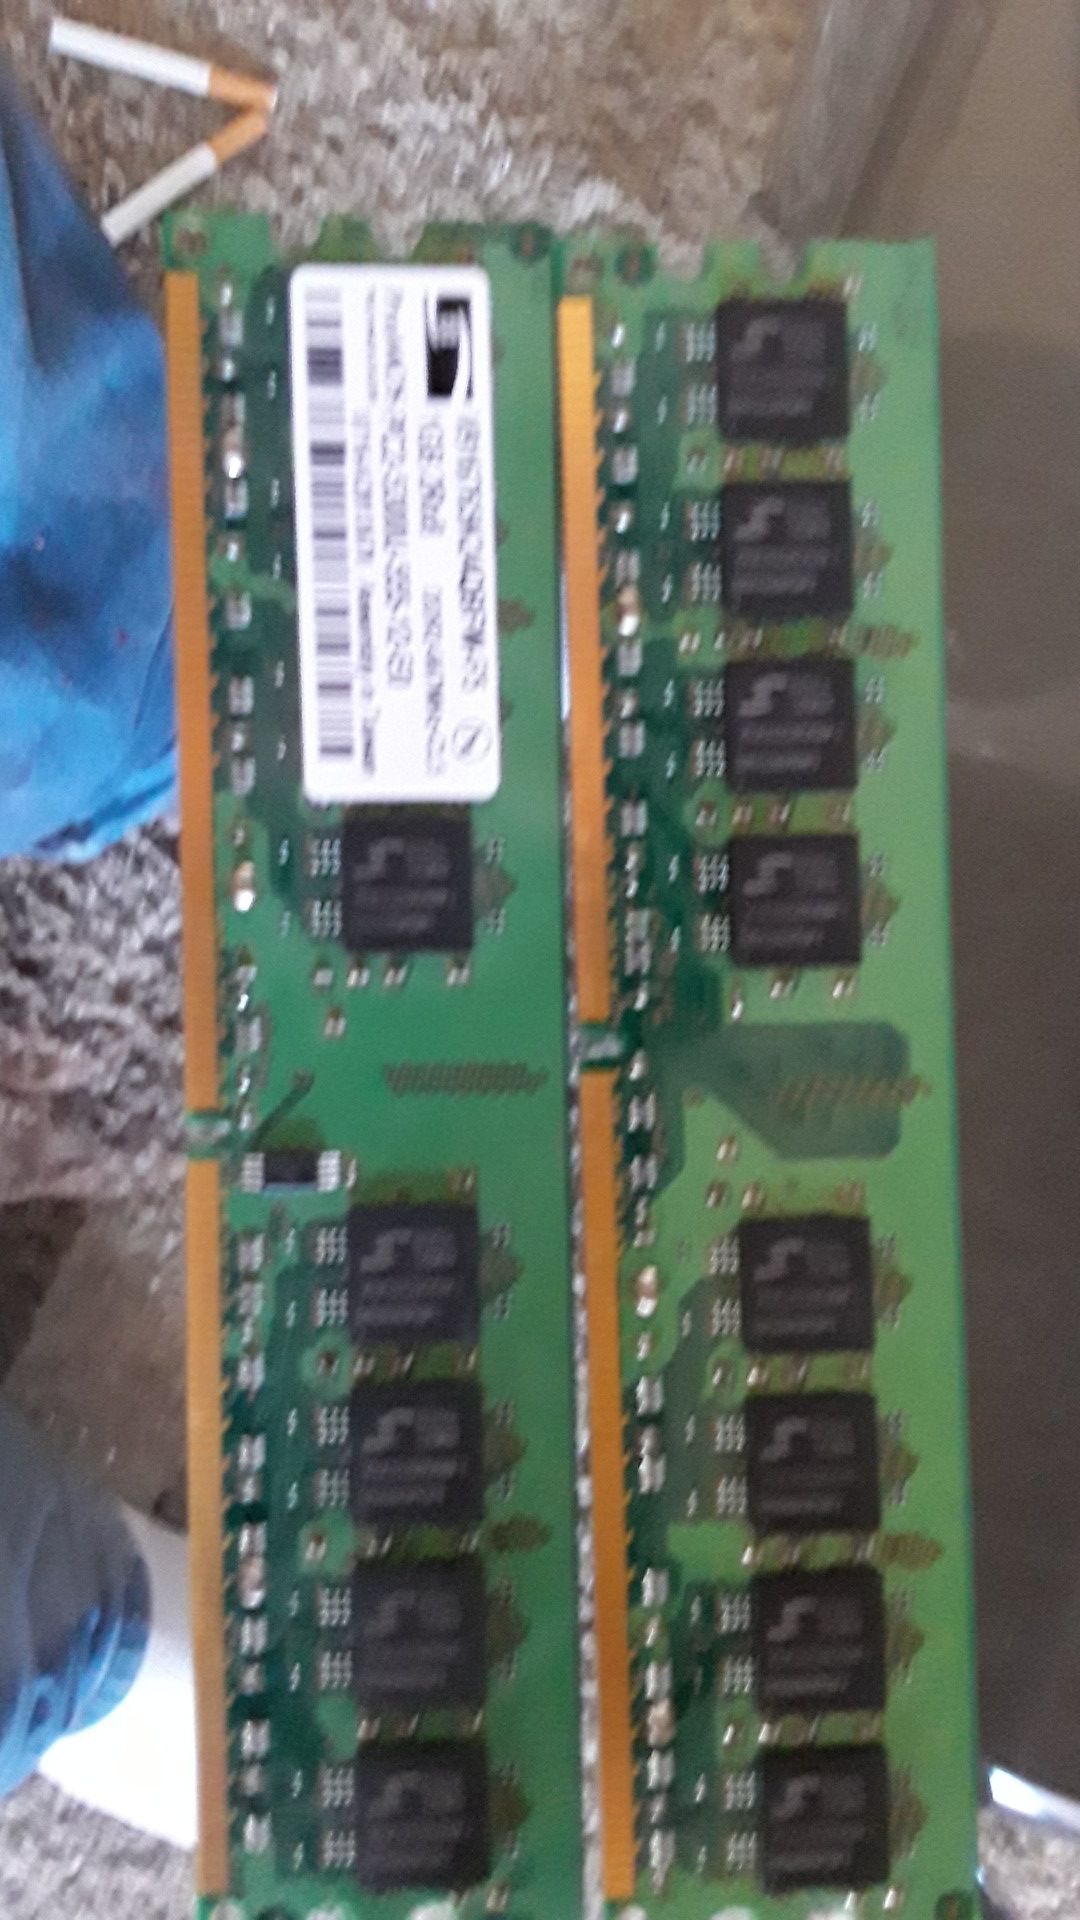 2x1gig DDR2 667MHz cl5 pc2-5300u